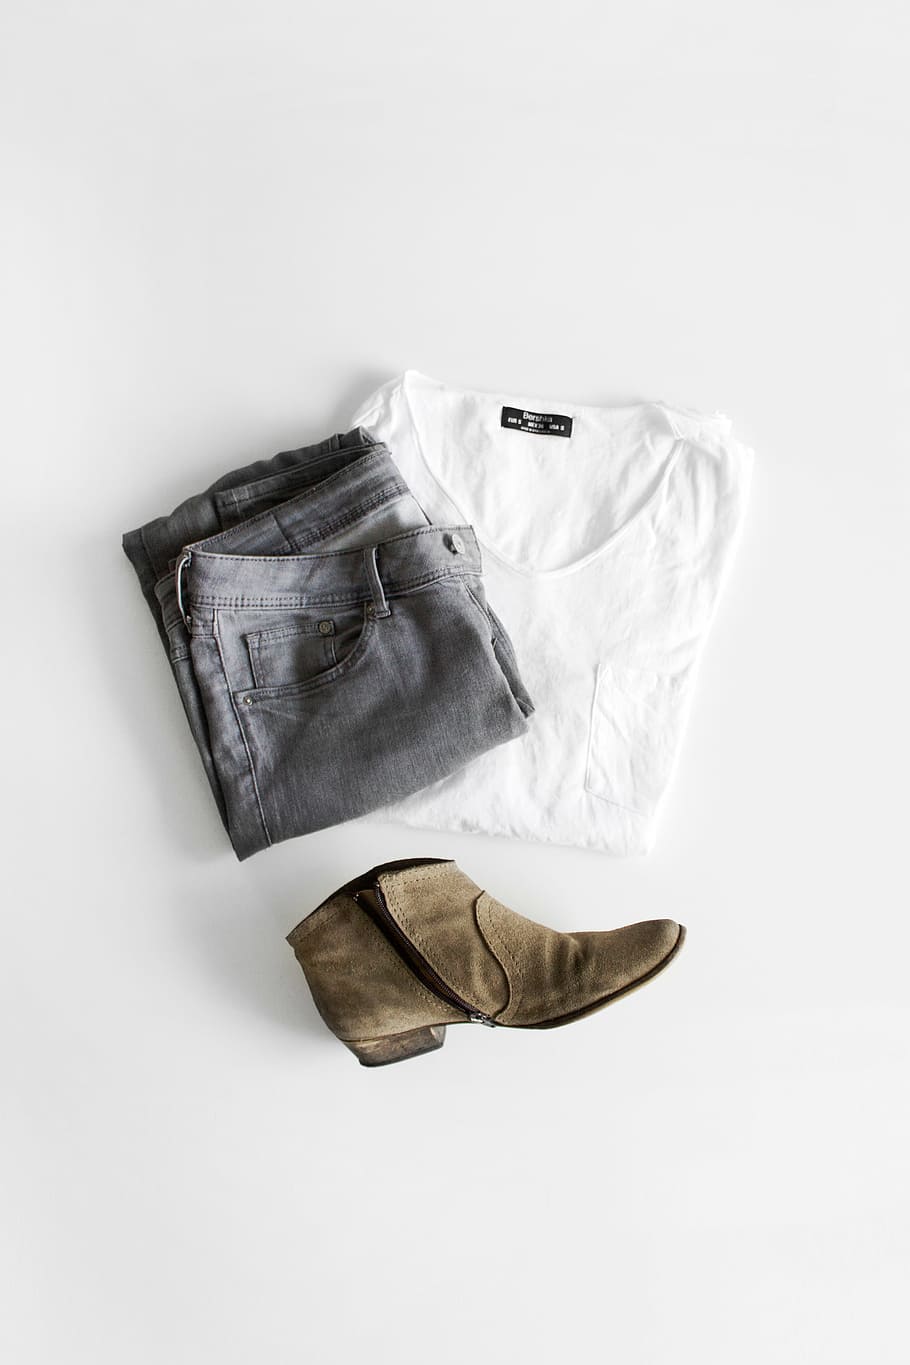 cinza, calça jeans, branco, camisa de gola alta, pareado, marrom, bota, jeans, ainda, itens